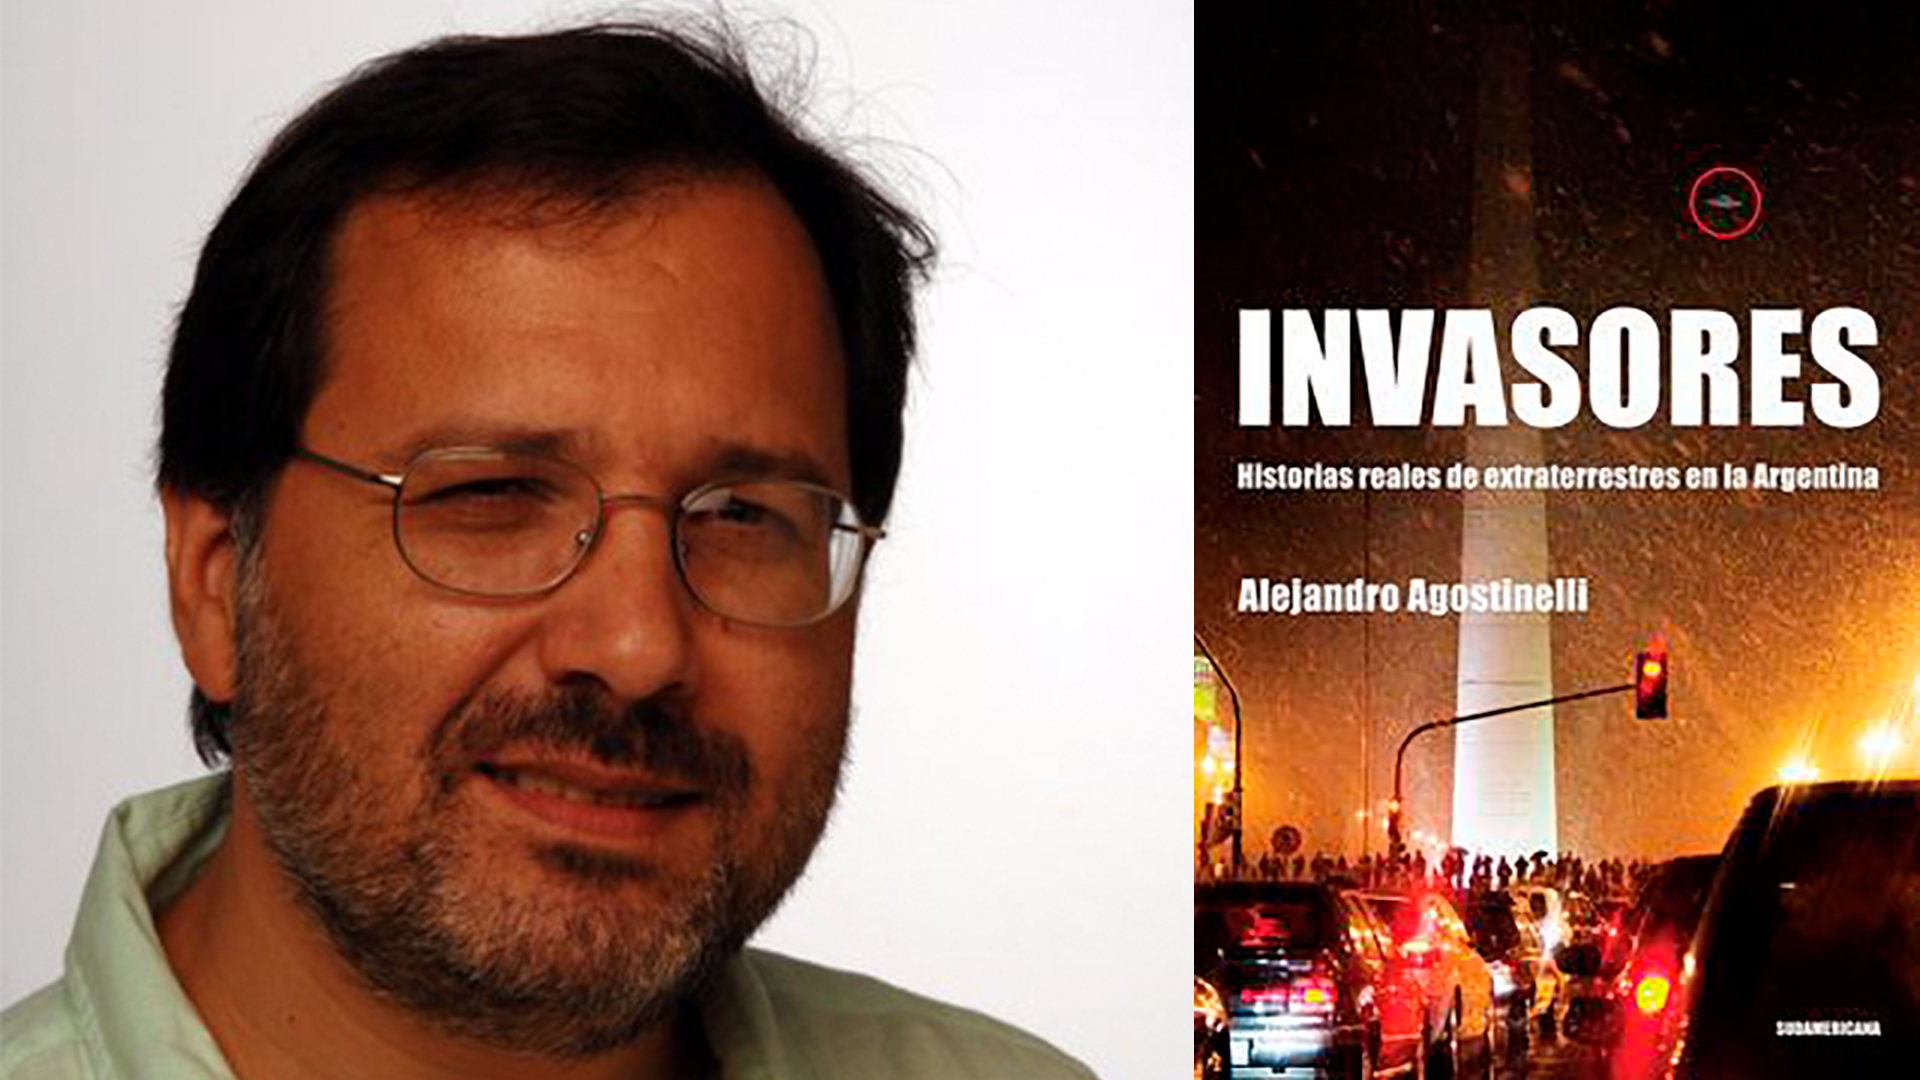 El periodista Alejandro Agostinelli es autor del libro "Invasores"